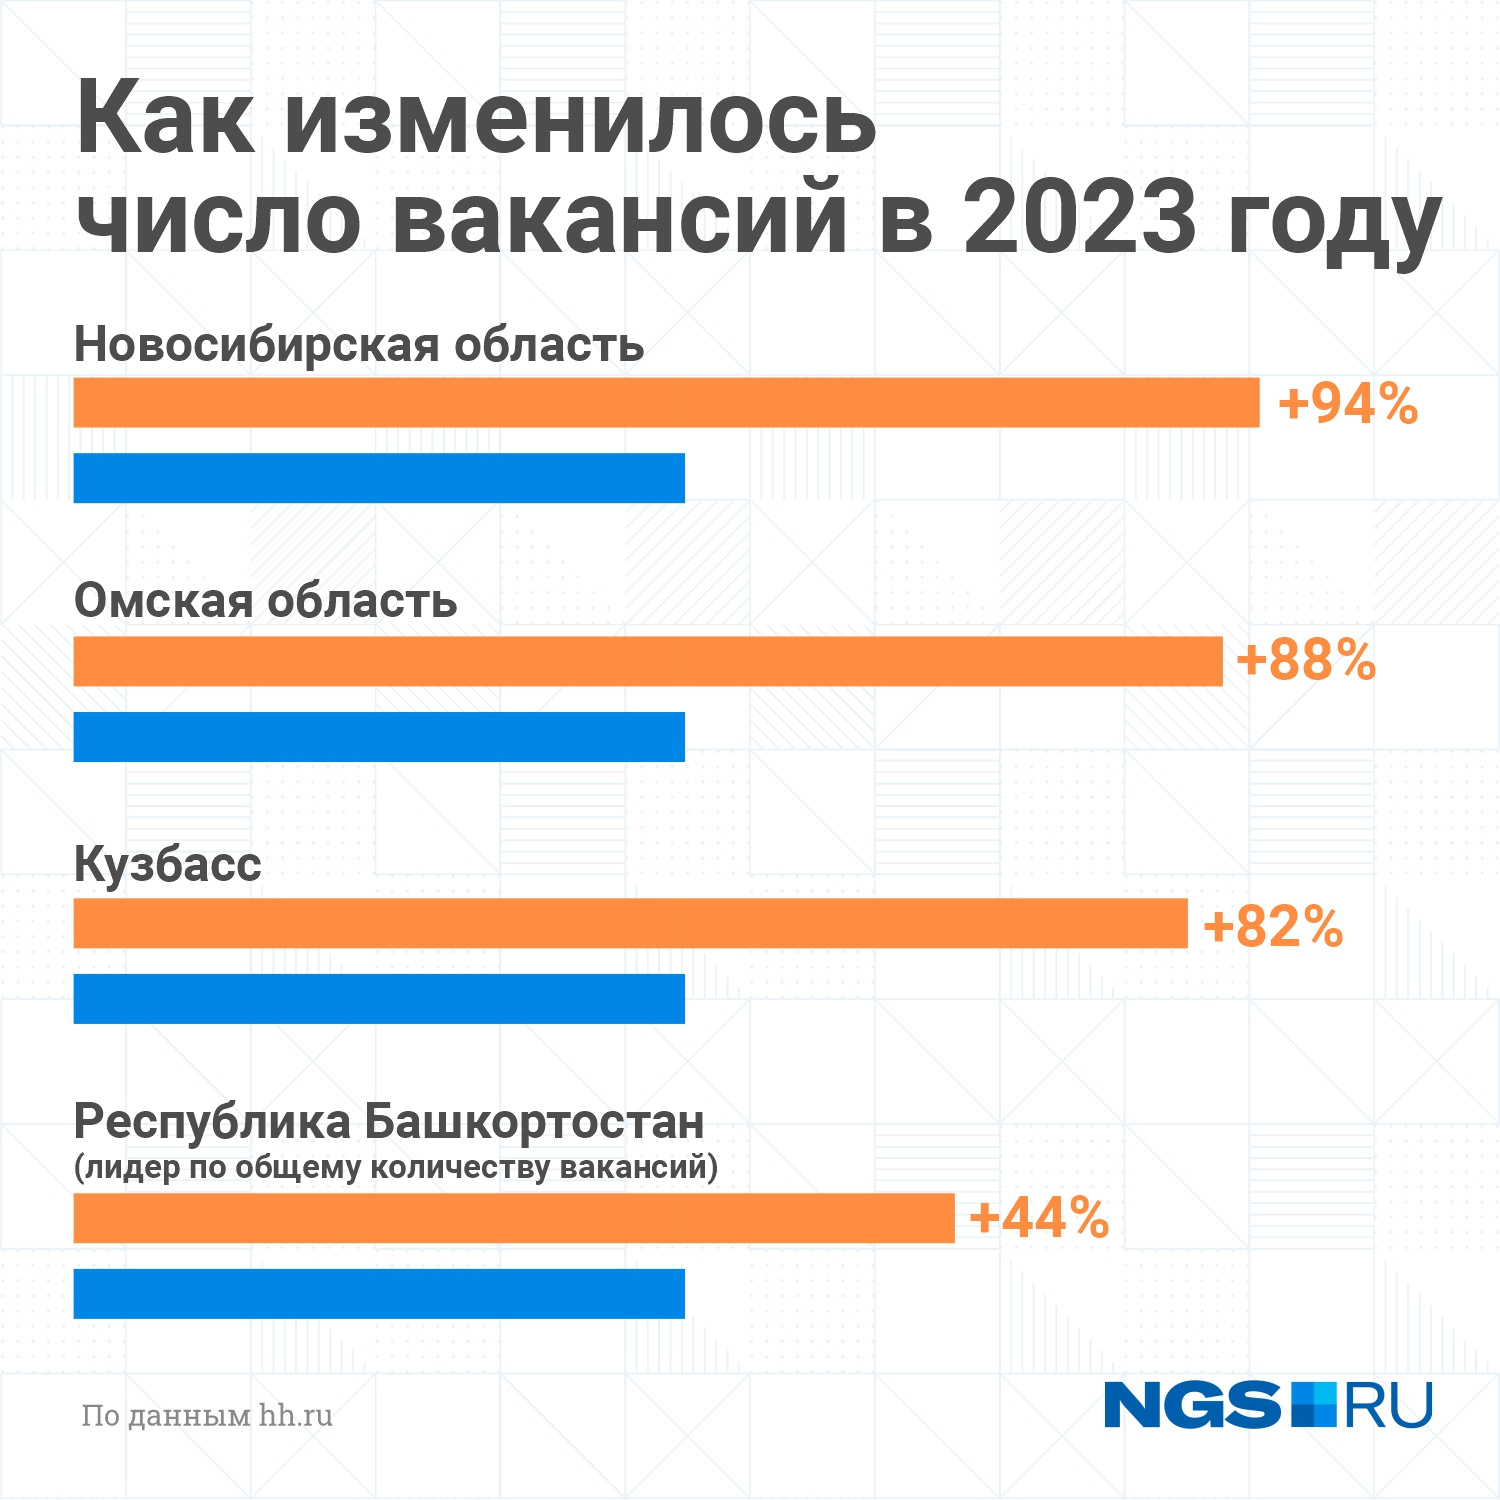 Больше всего из регионов СФО число вакансий выросло в Новосибирской и Омской областях